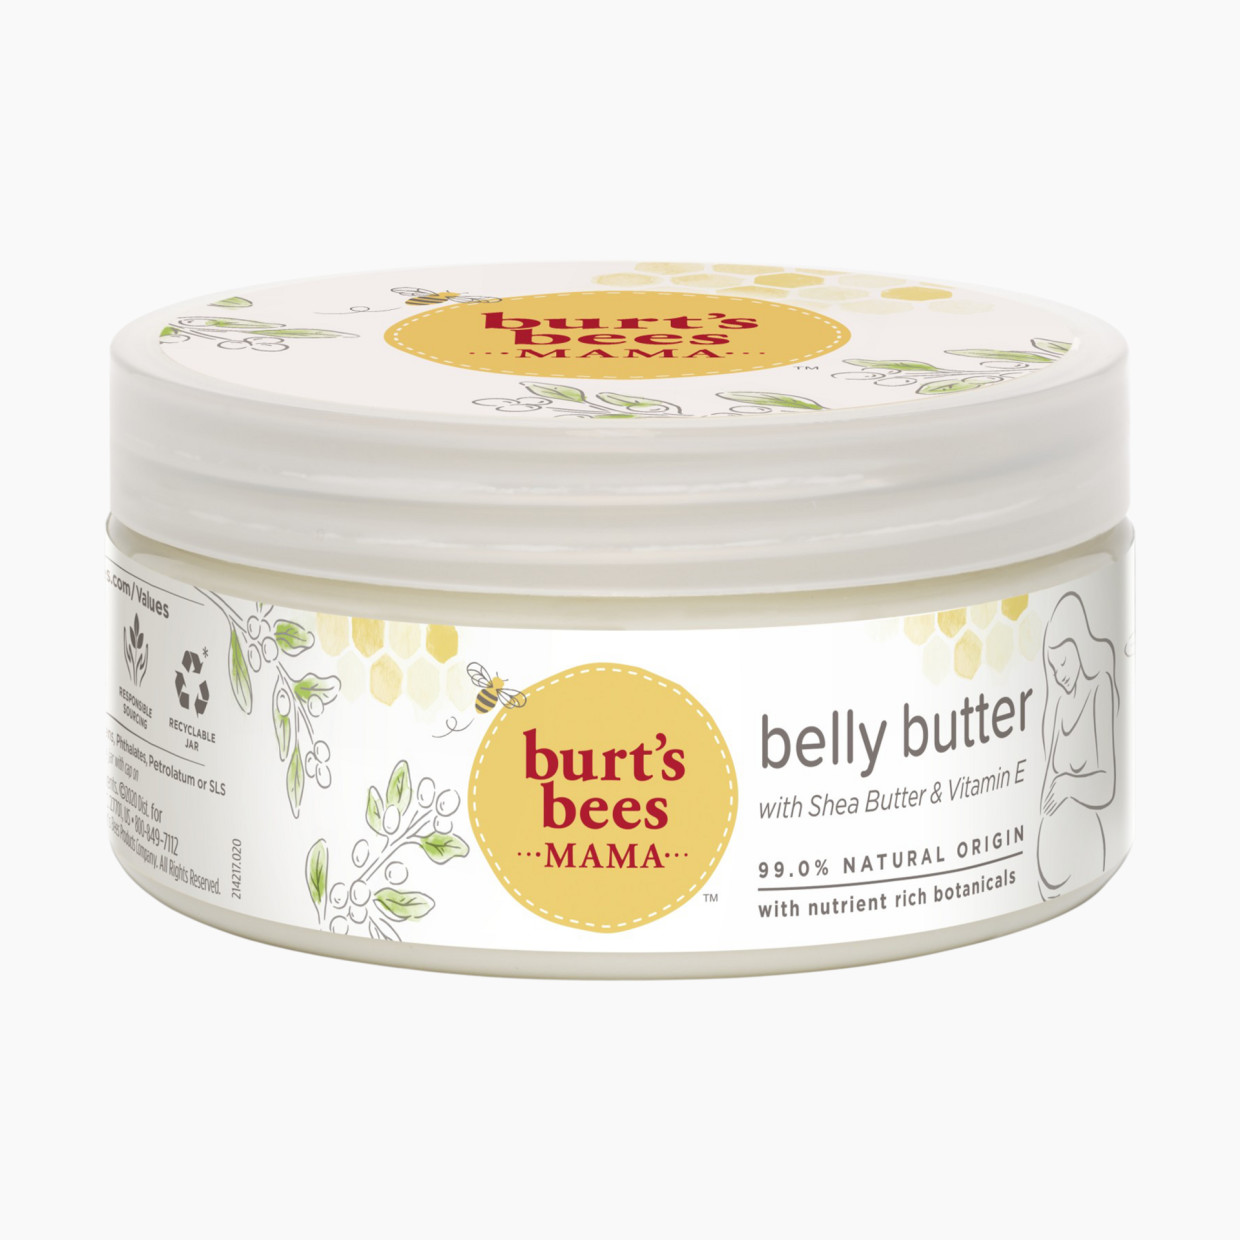 Burt's Bees Burt's Bees Mama Belly Butter - 6.5 Oz.